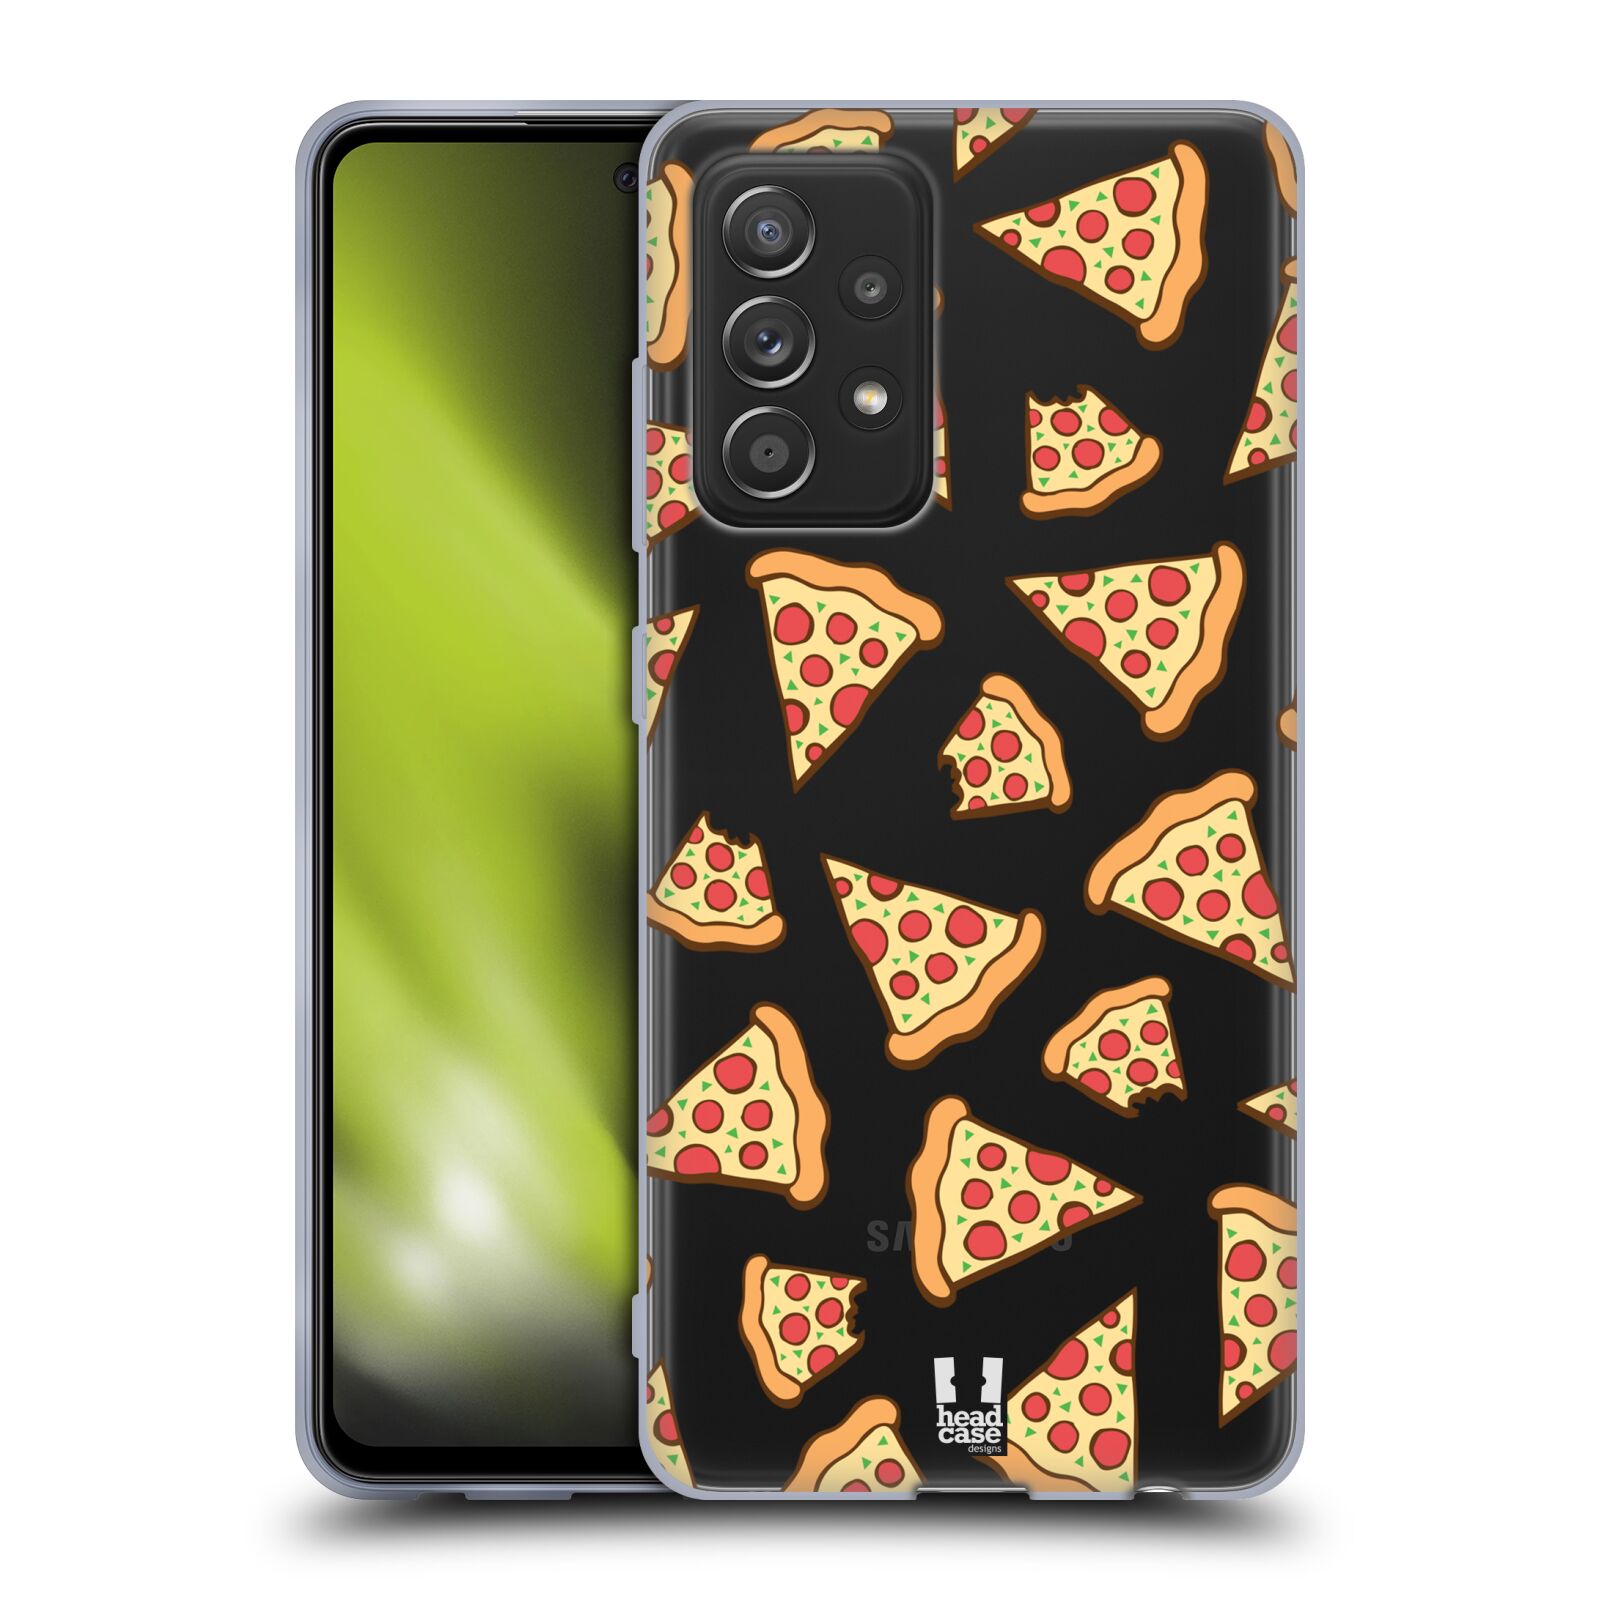 Silikonové pouzdro na mobil Samsung Galaxy A52 / A52 5G / A52s 5G - Head Case - Pizza (Silikonový kryt či obal na mobilní telefon s motivem Pizza pro Samsung Galaxy A52 / A52 5G / A52s 5G)